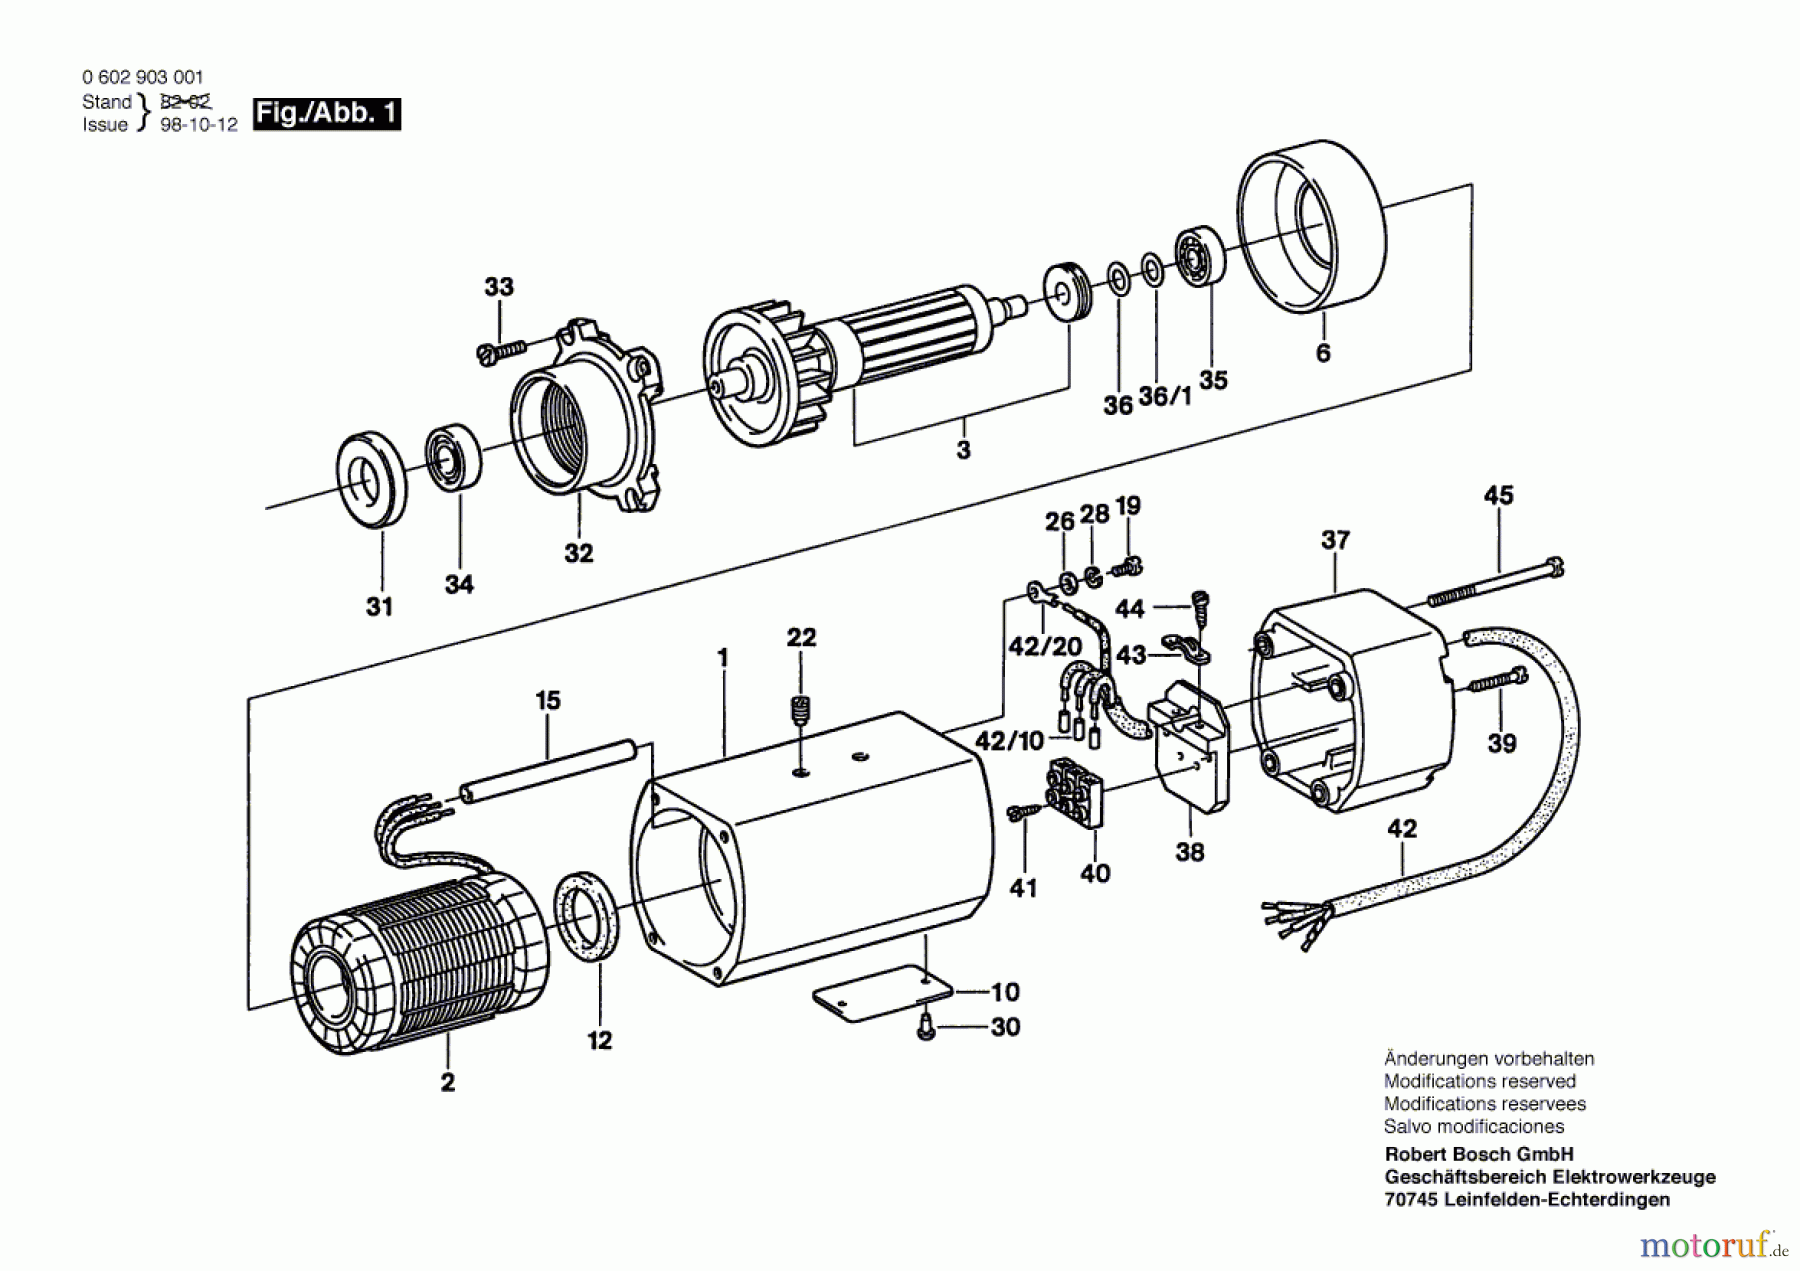  Bosch Werkzeug Hf-Anbaumotor GR./SIZE 65 Seite 1